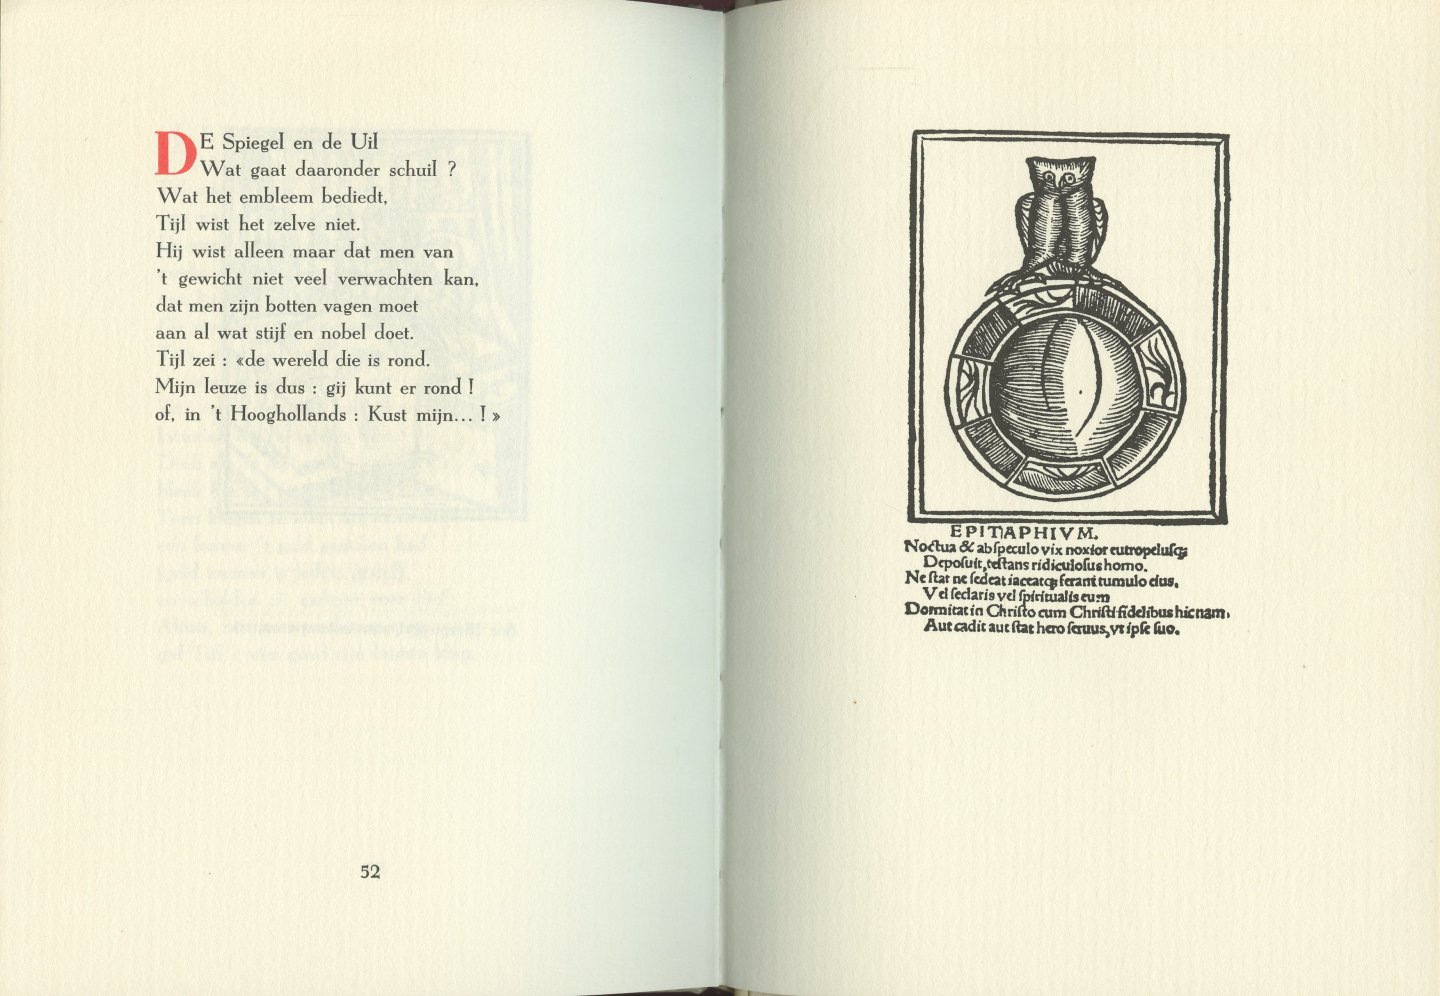 Decorte, Bert - Thijl Ulenspieghel. Gedichten. Met de oorspronkelijke prenten van het oude volksboek (± 1518).